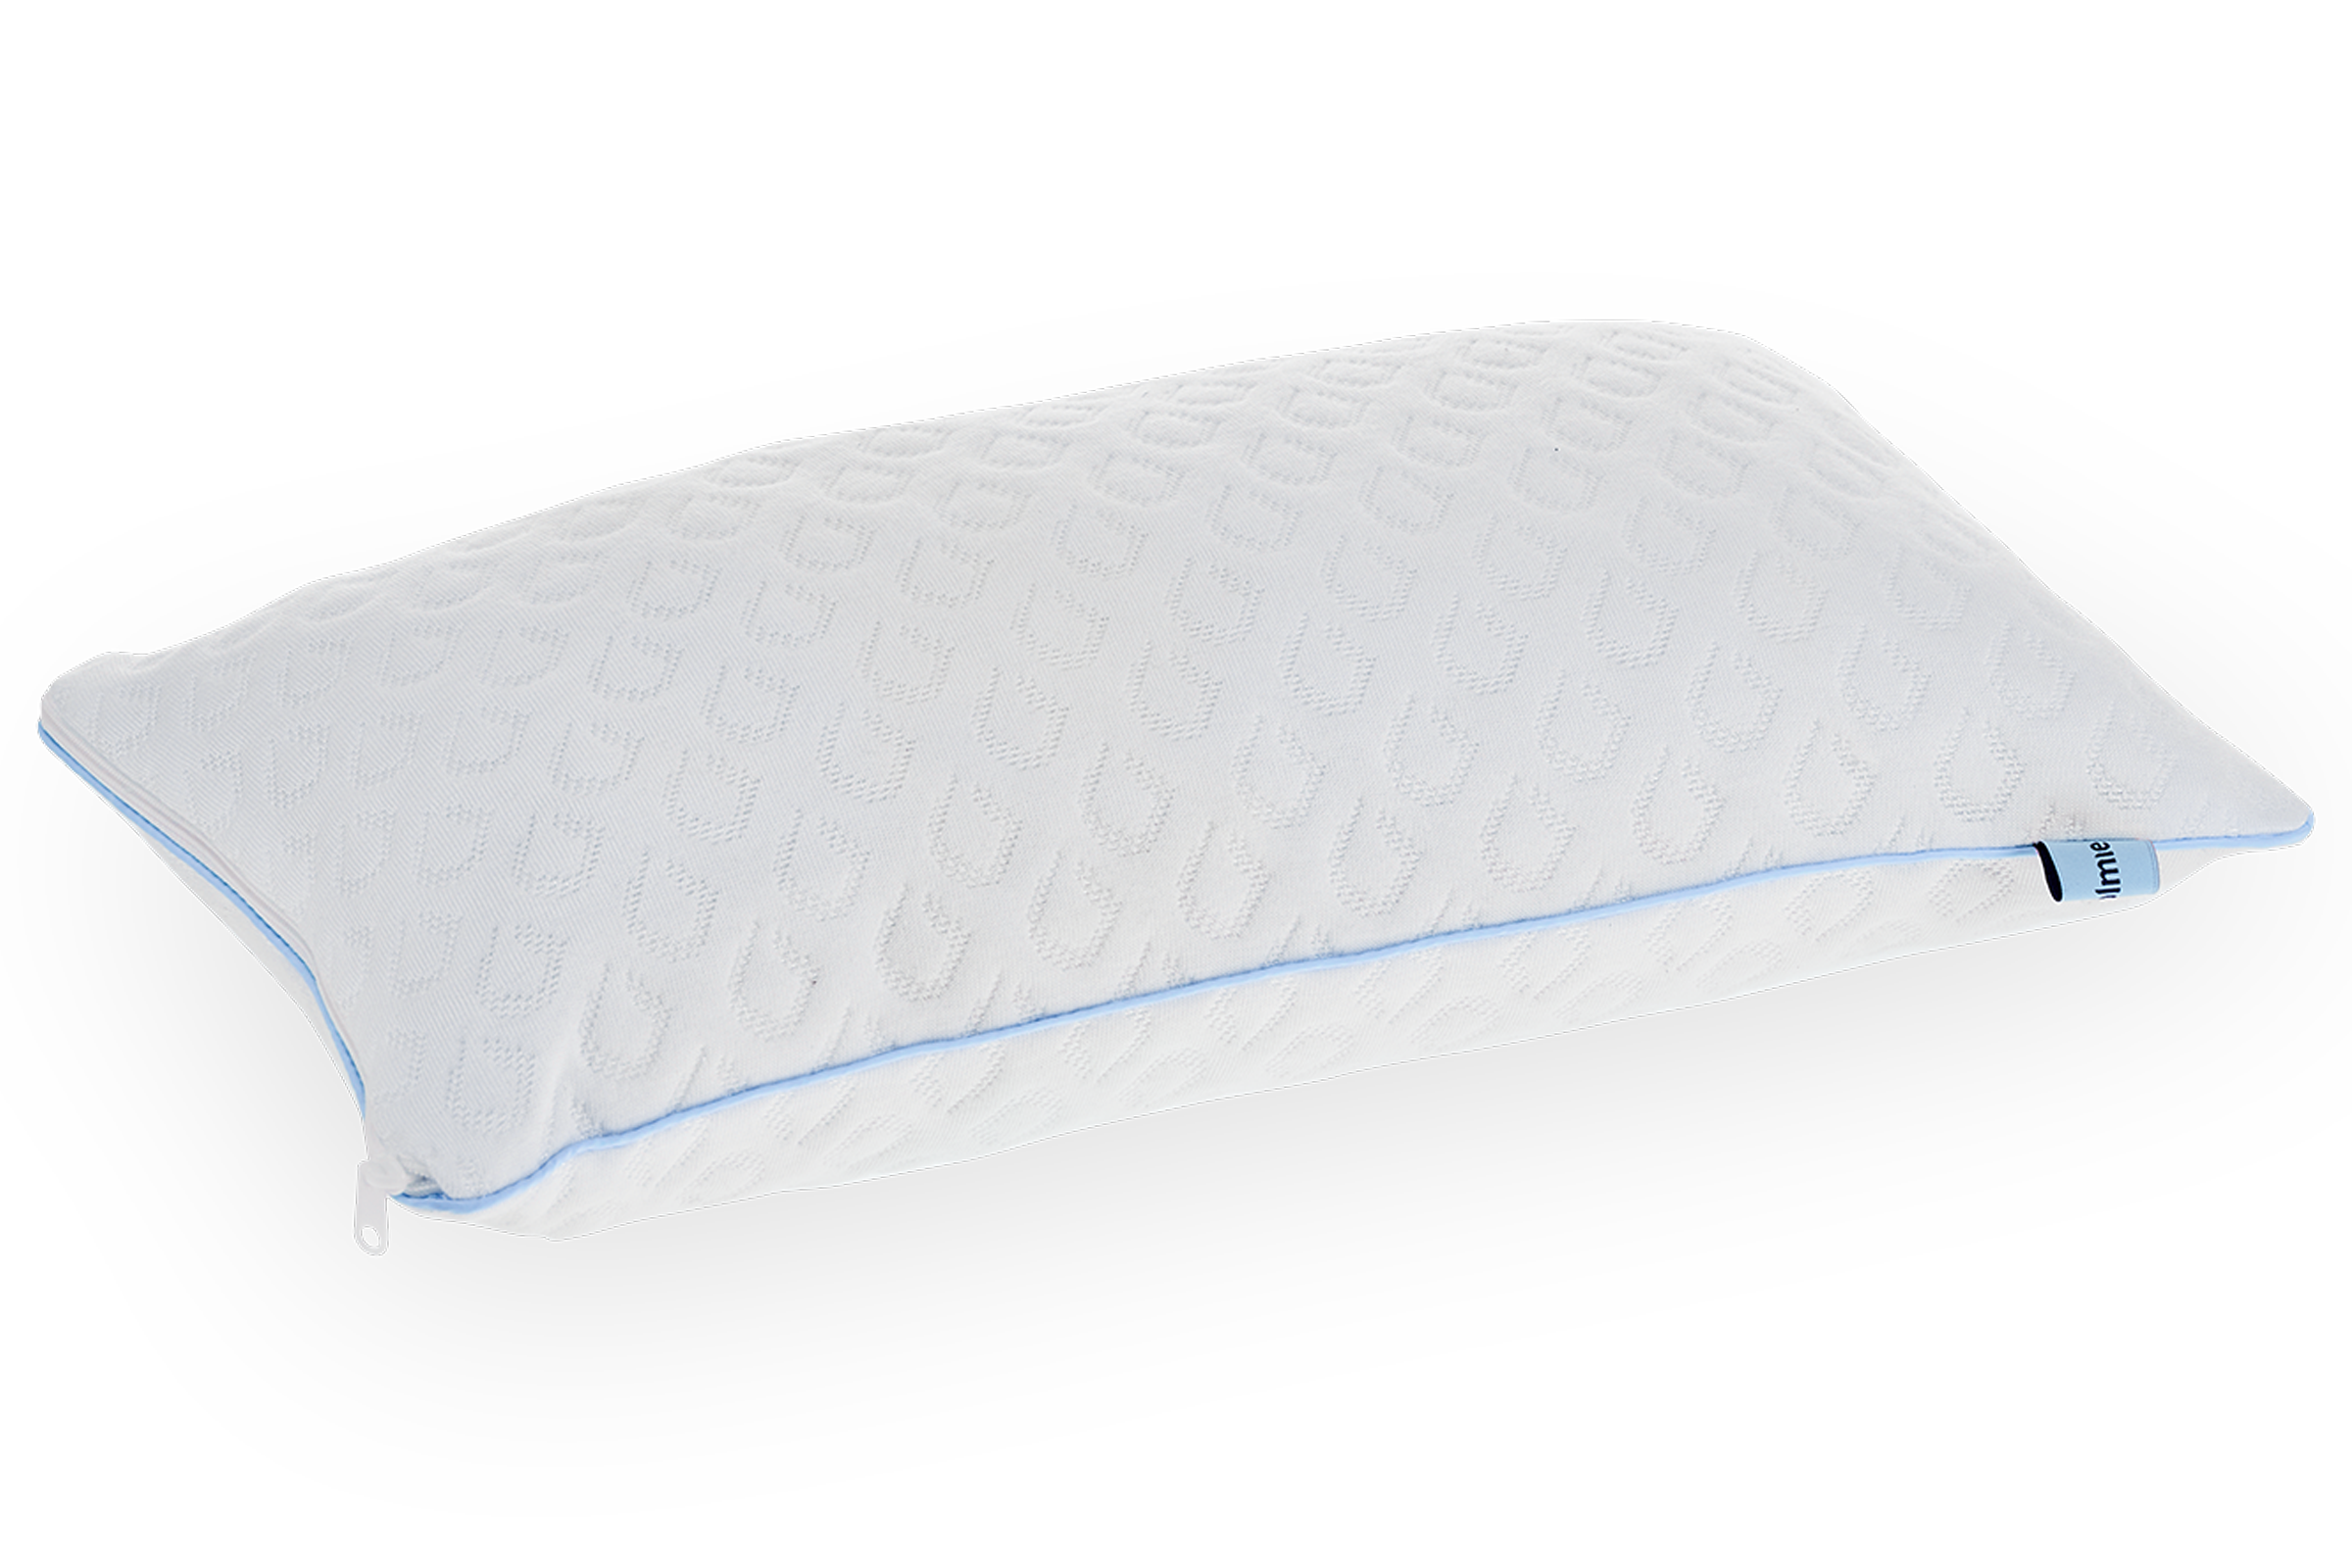 Benessere, comfort e sicurezza: il cuscino anti soffocamento con dettaglio blu, personalizzabile e igienizzabile per bambini da 0 a 3 anni